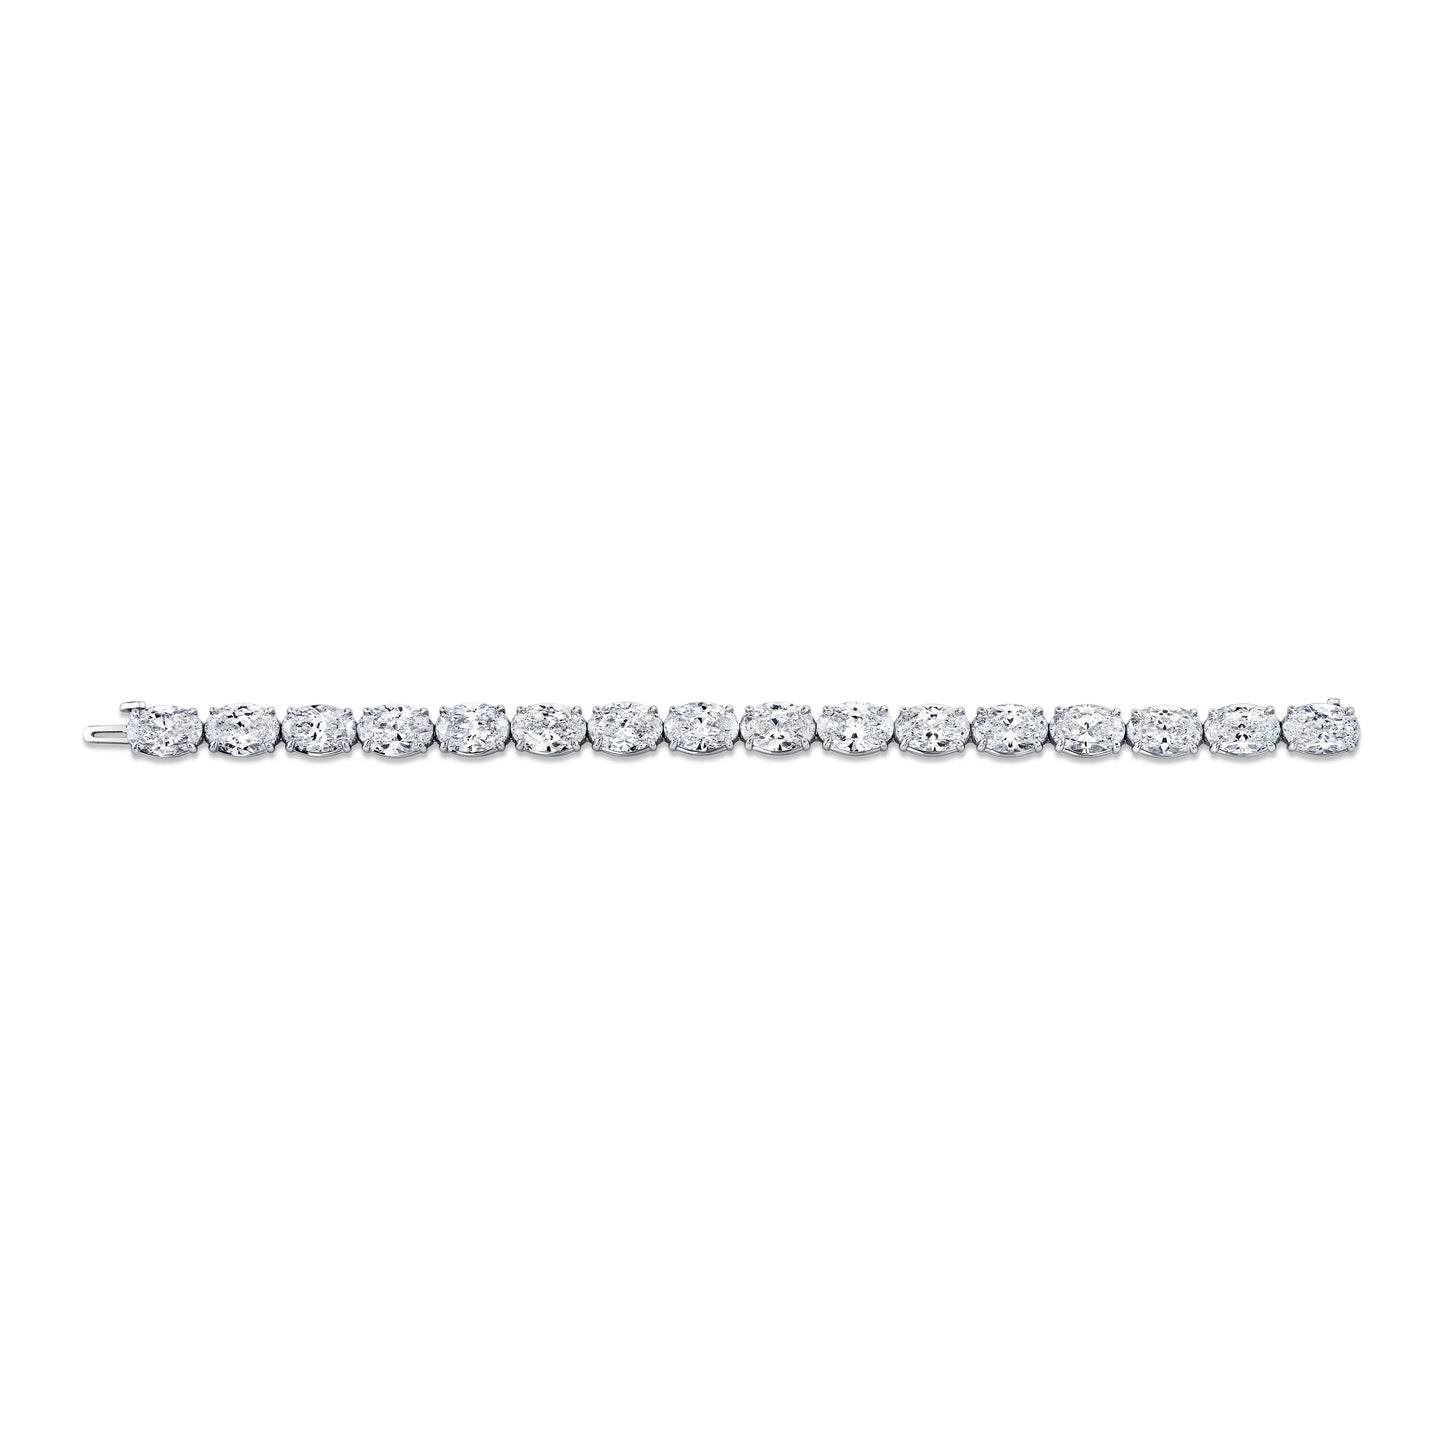 32 Carat Oval Cut Diamond Bracelet